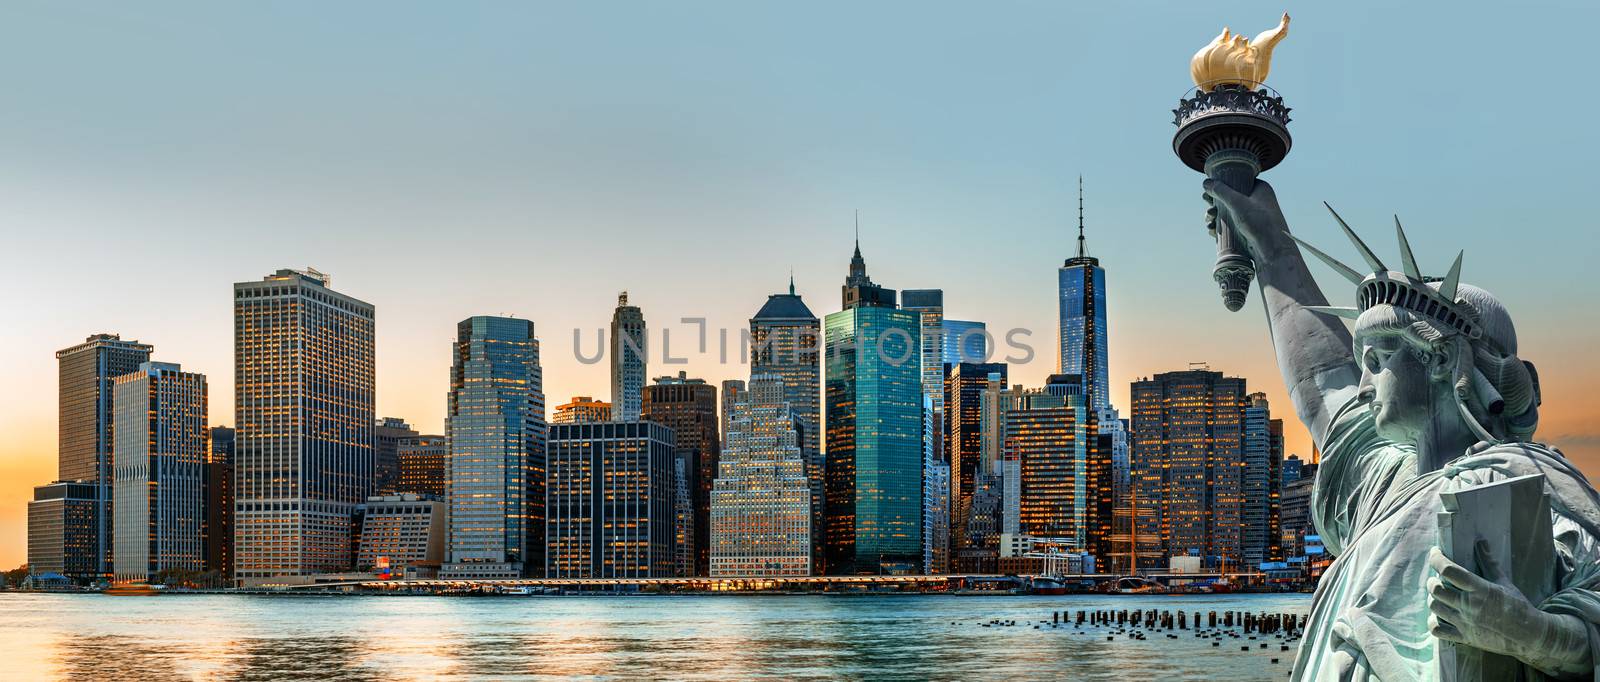 New York City skyline panorama by palinchak